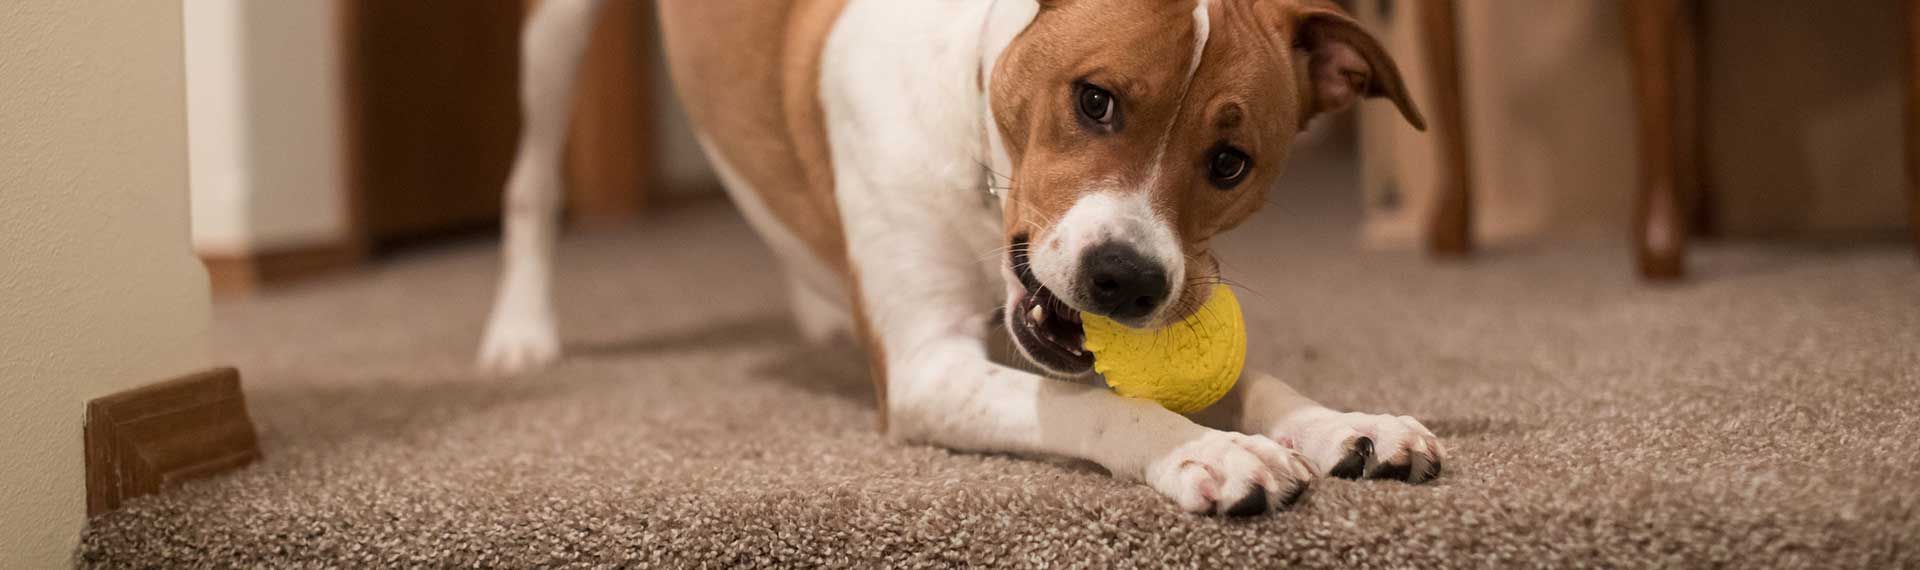 perrito jugando con una pelota sobre piso alfombrado